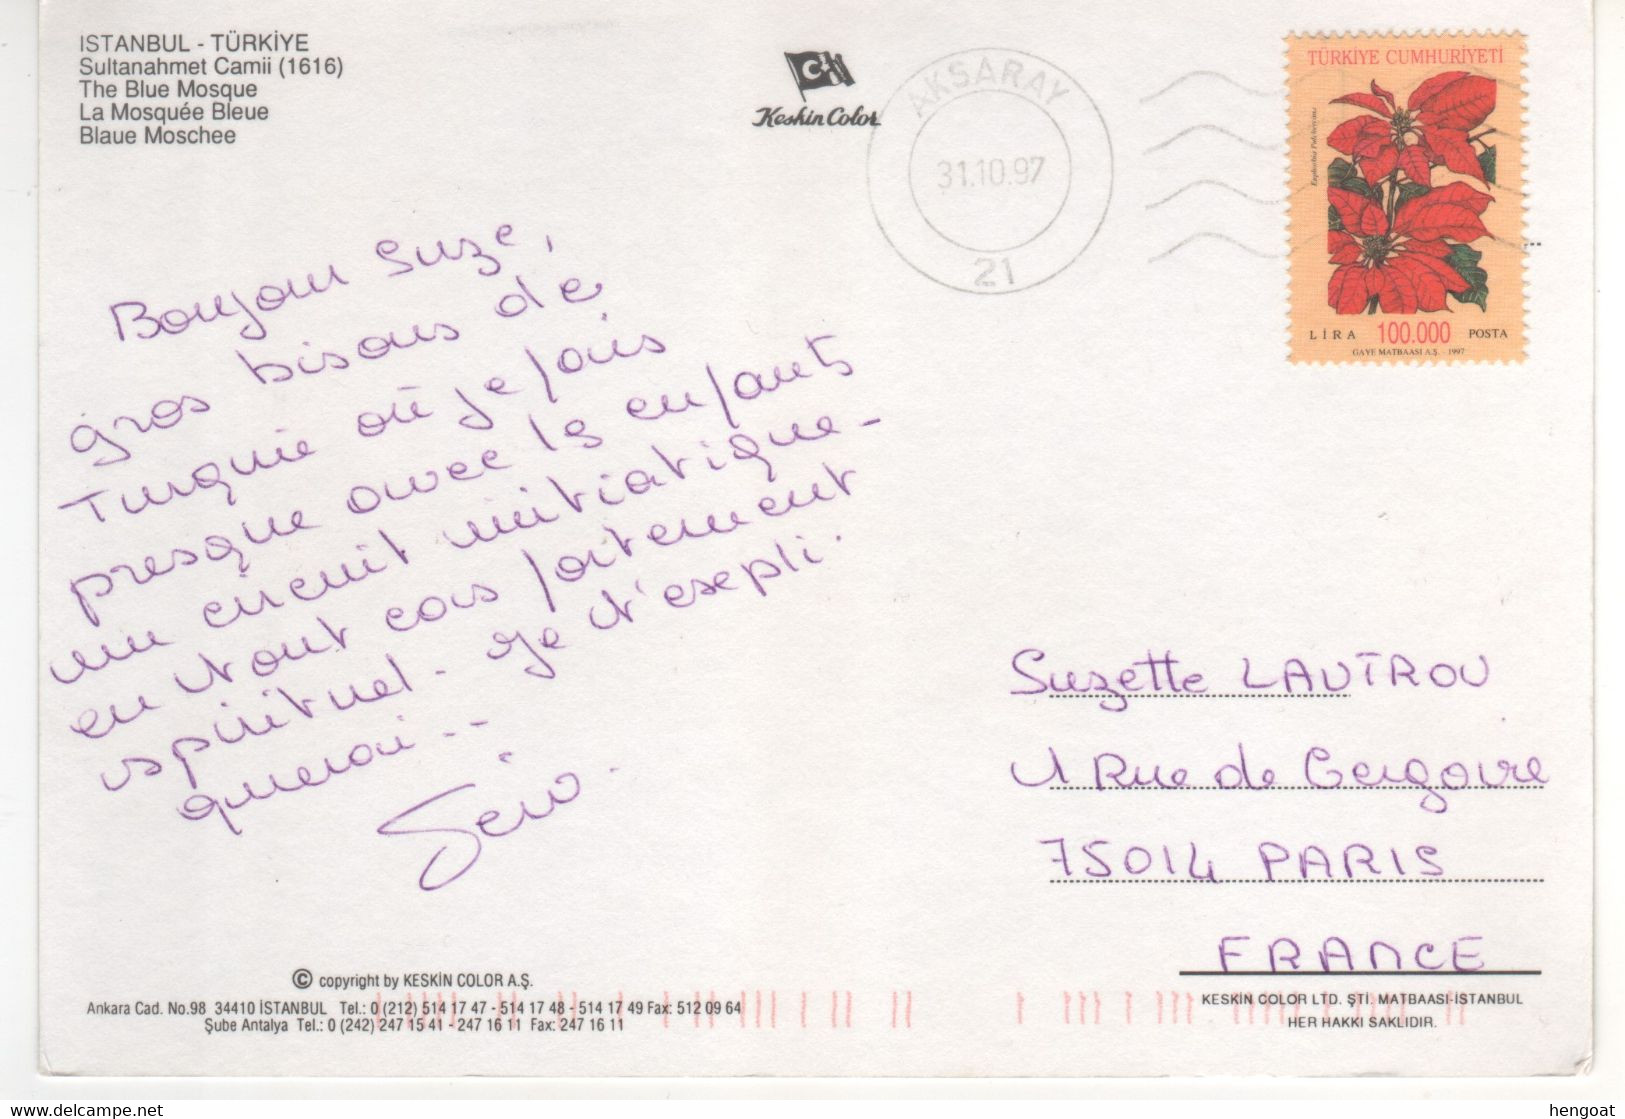 Timbre , Stamp Fleur " Euphorbia " Sur Cp , Carte , Postcard Du 31/10/97 - Storia Postale